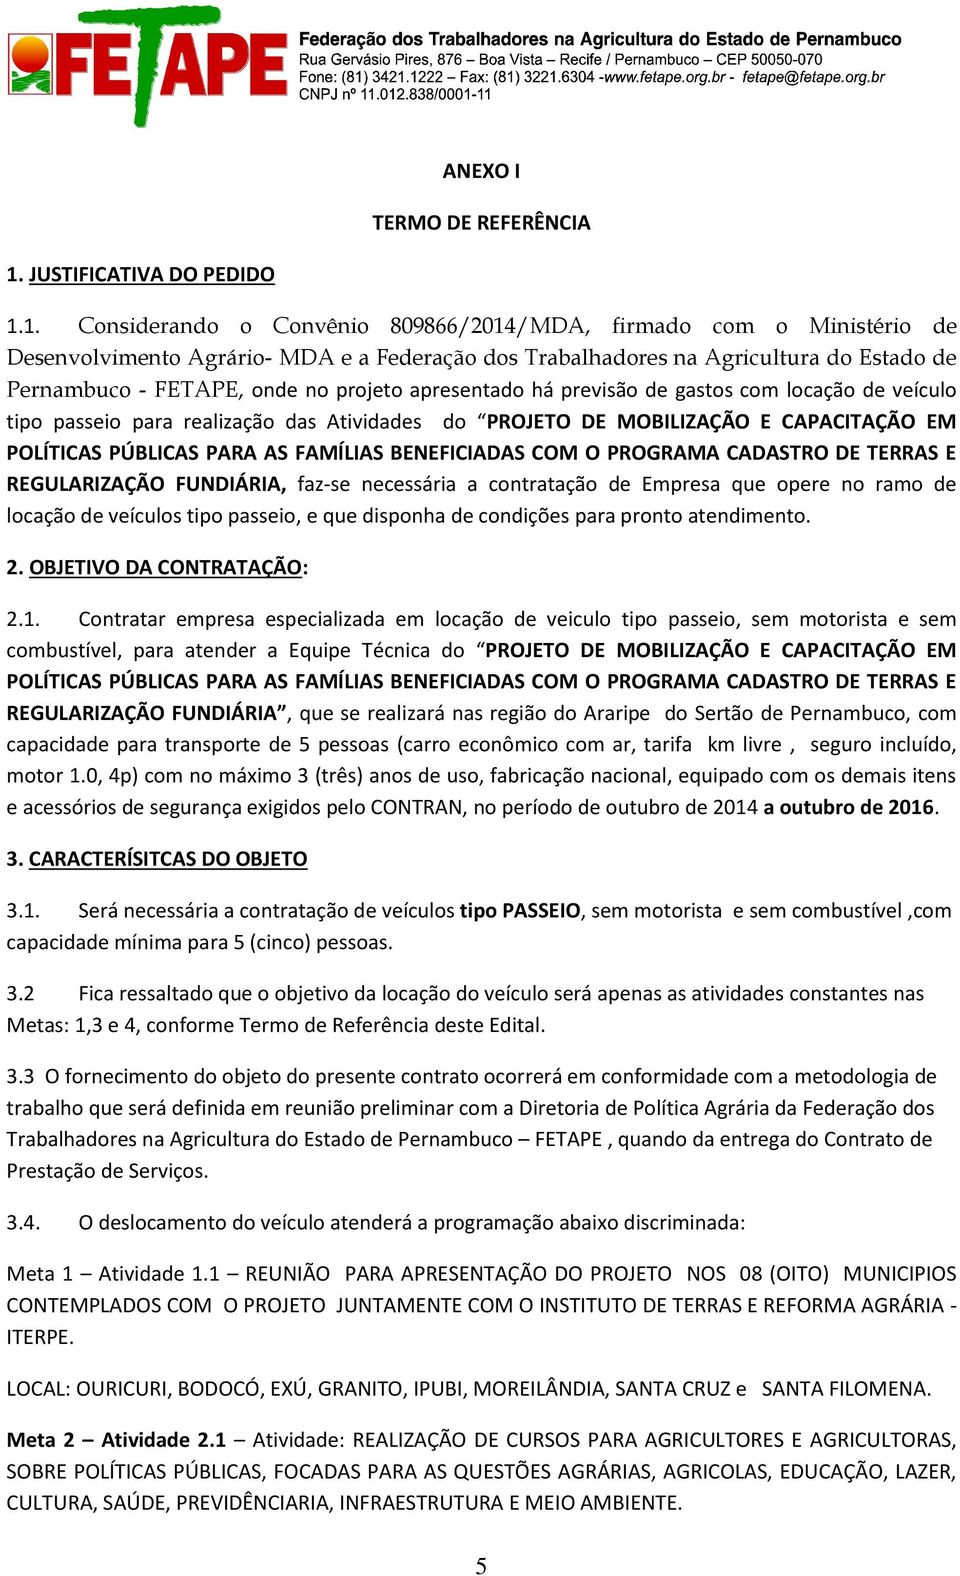 1. Considerando o Convênio 809866/2014/MDA, firmado com o Ministério de Desenvolvimento Agrário- MDA e a Federação dos Trabalhadores na Agricultura do Estado de Pernambuco - FETAPE, onde no projeto